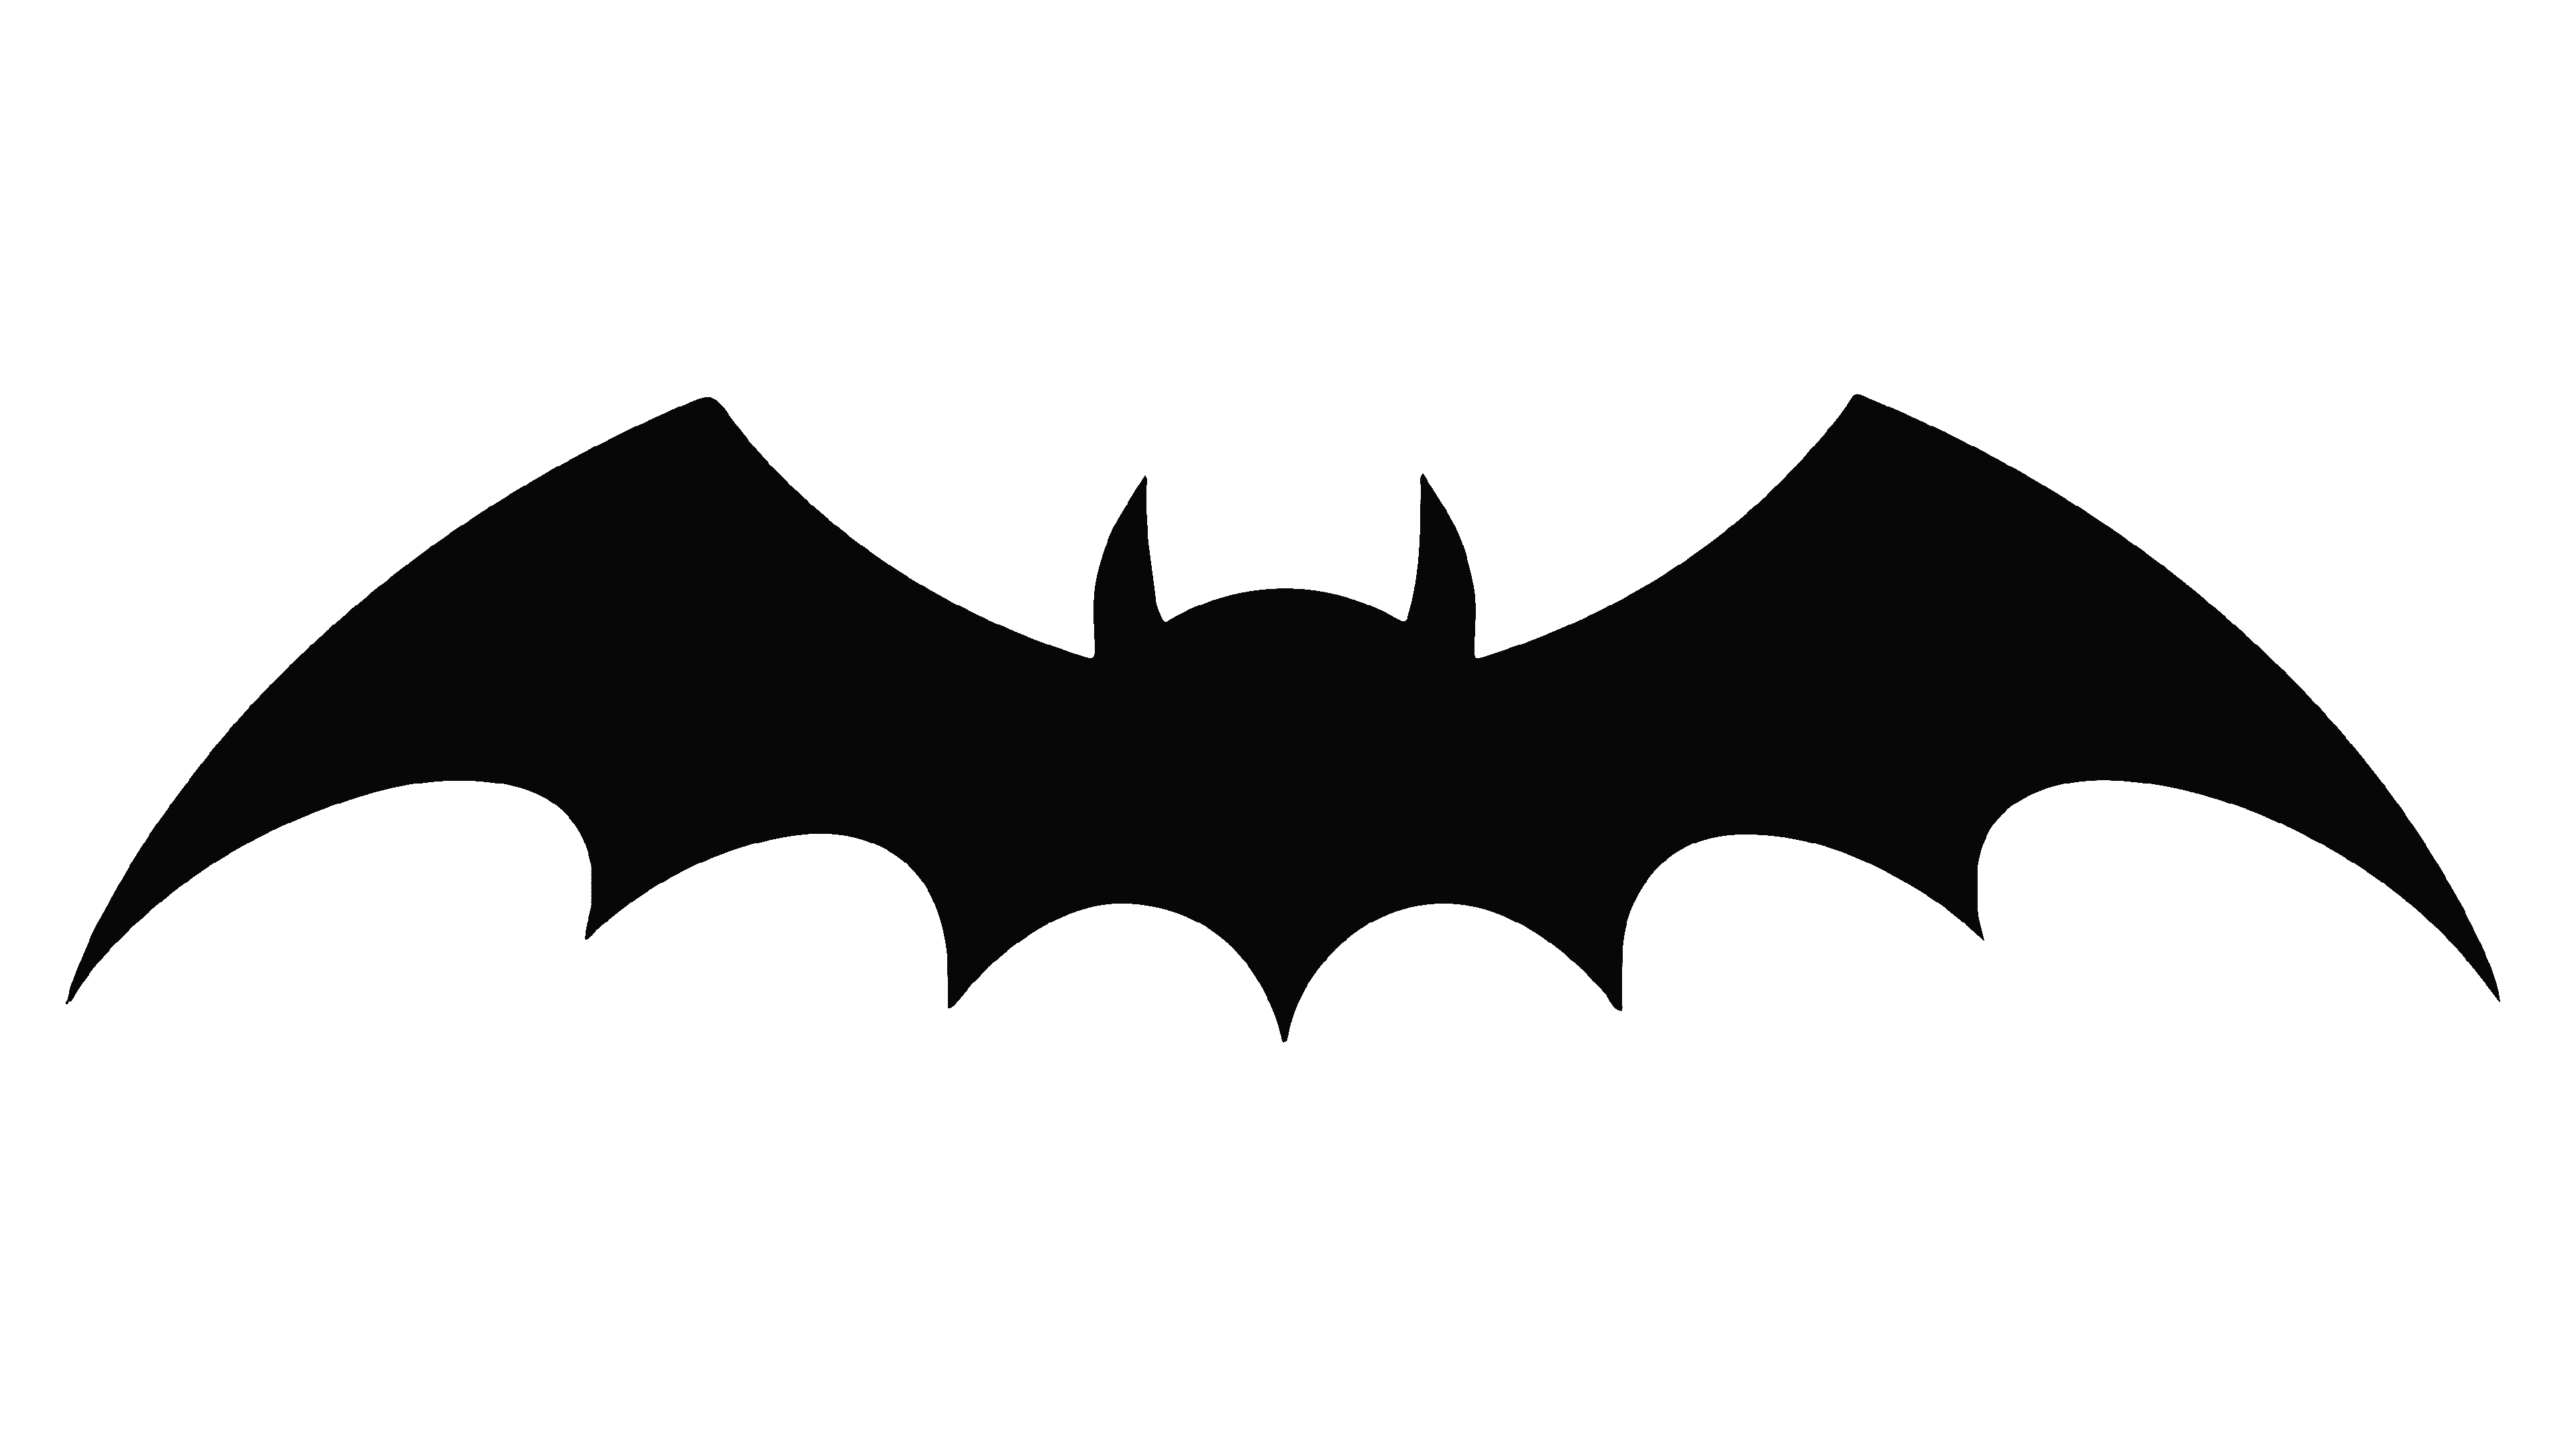 Batman Logo  Batman logo, Batman poster, Batman art